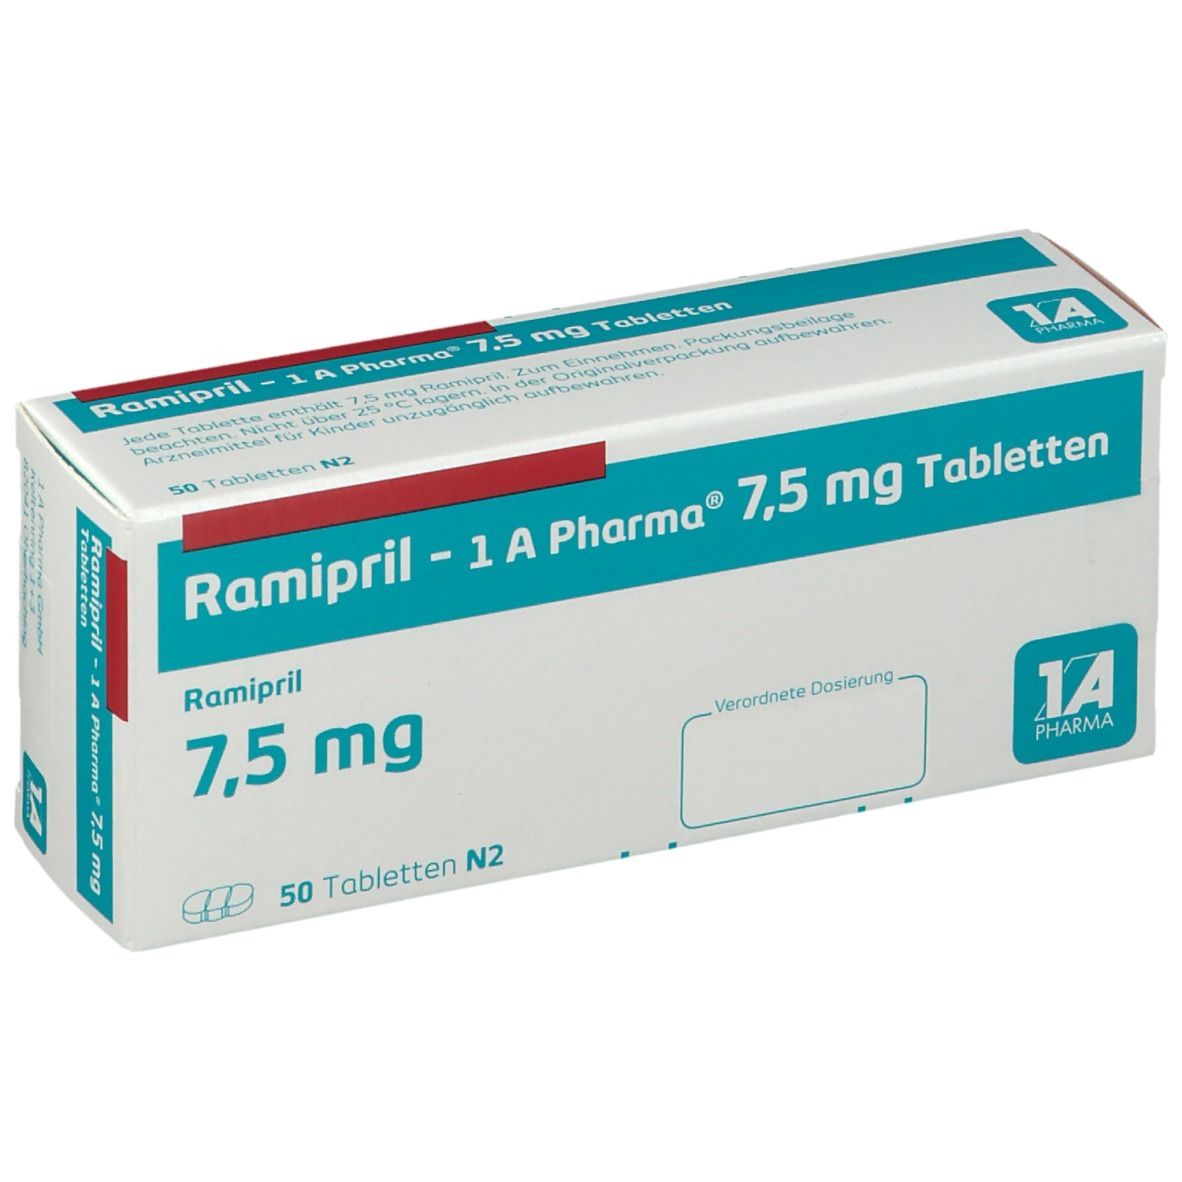 Ramipril - 1 A Pharma® 7,5 mg